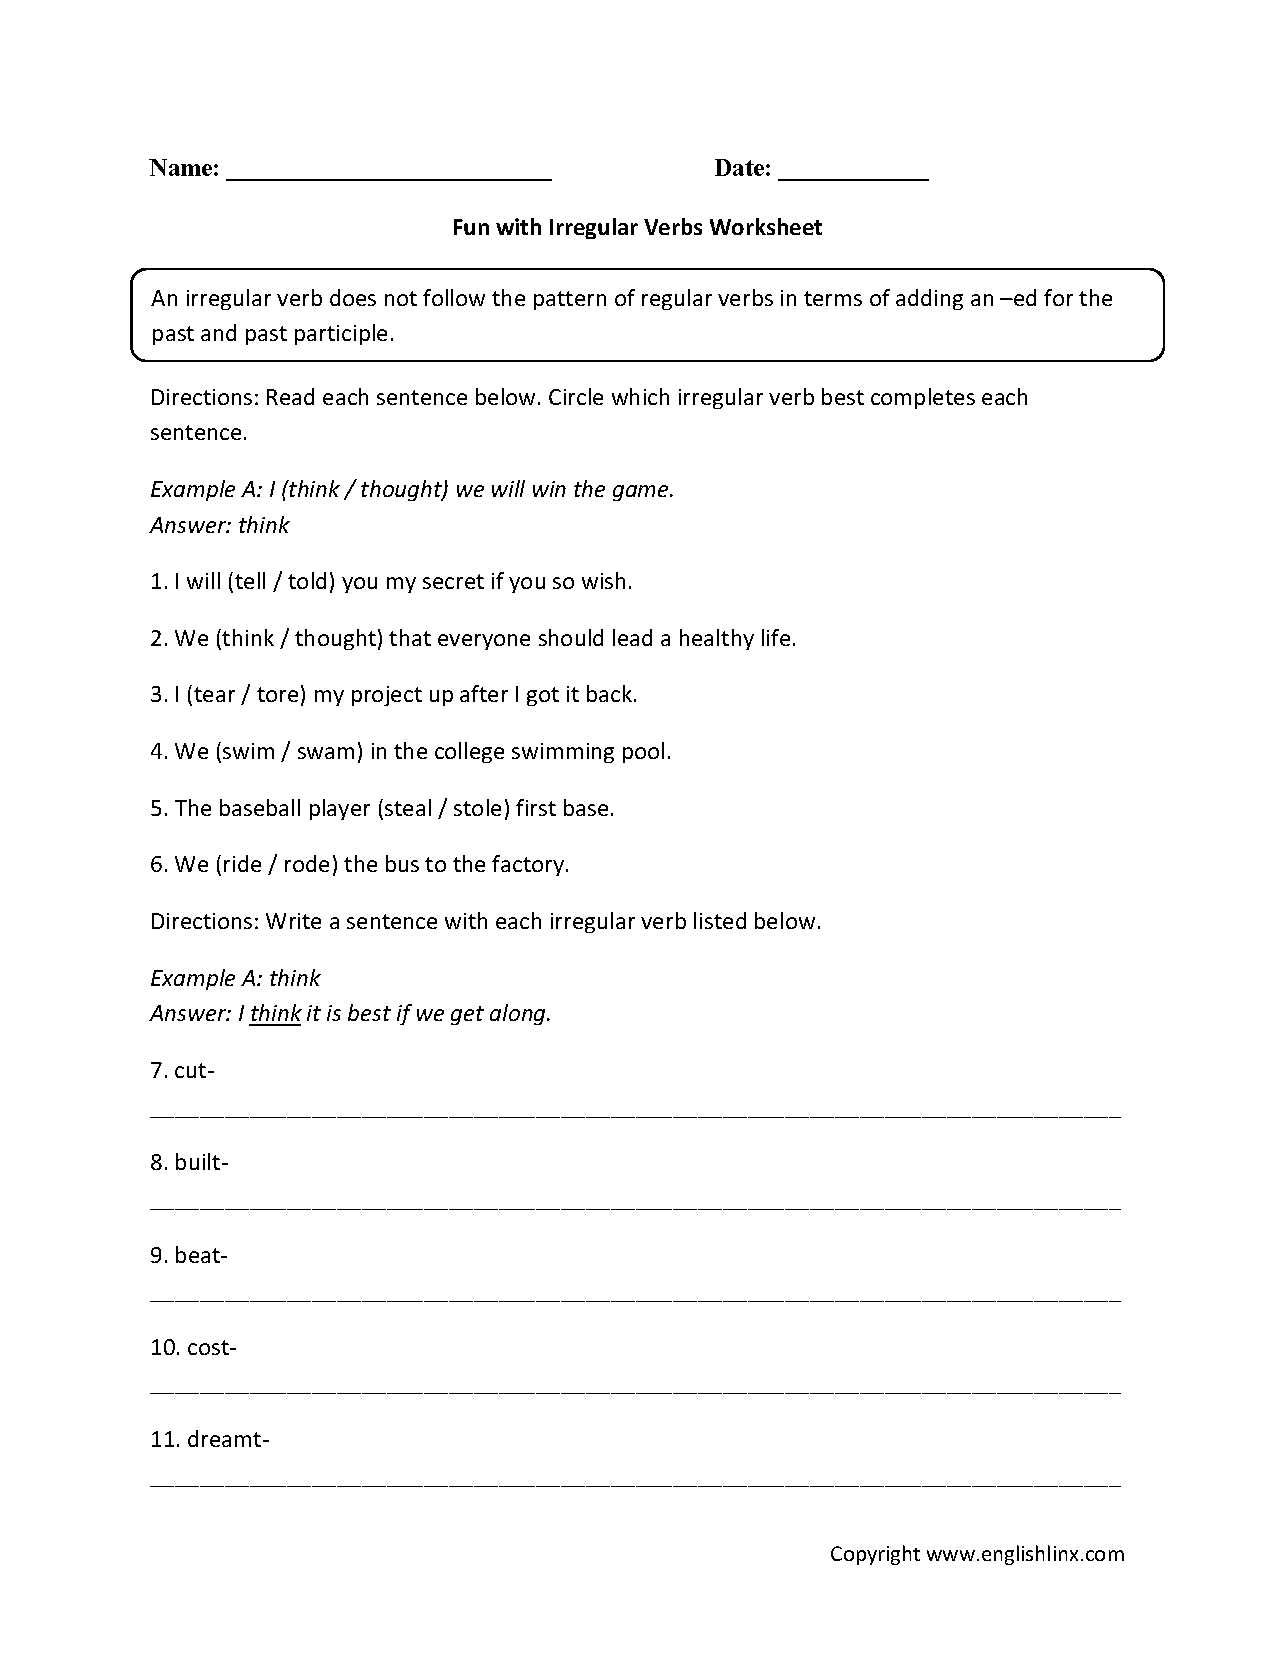 Regular Irregular Verbs Worksheet as Well as Irregular Verbs Worksheets for Grade 1